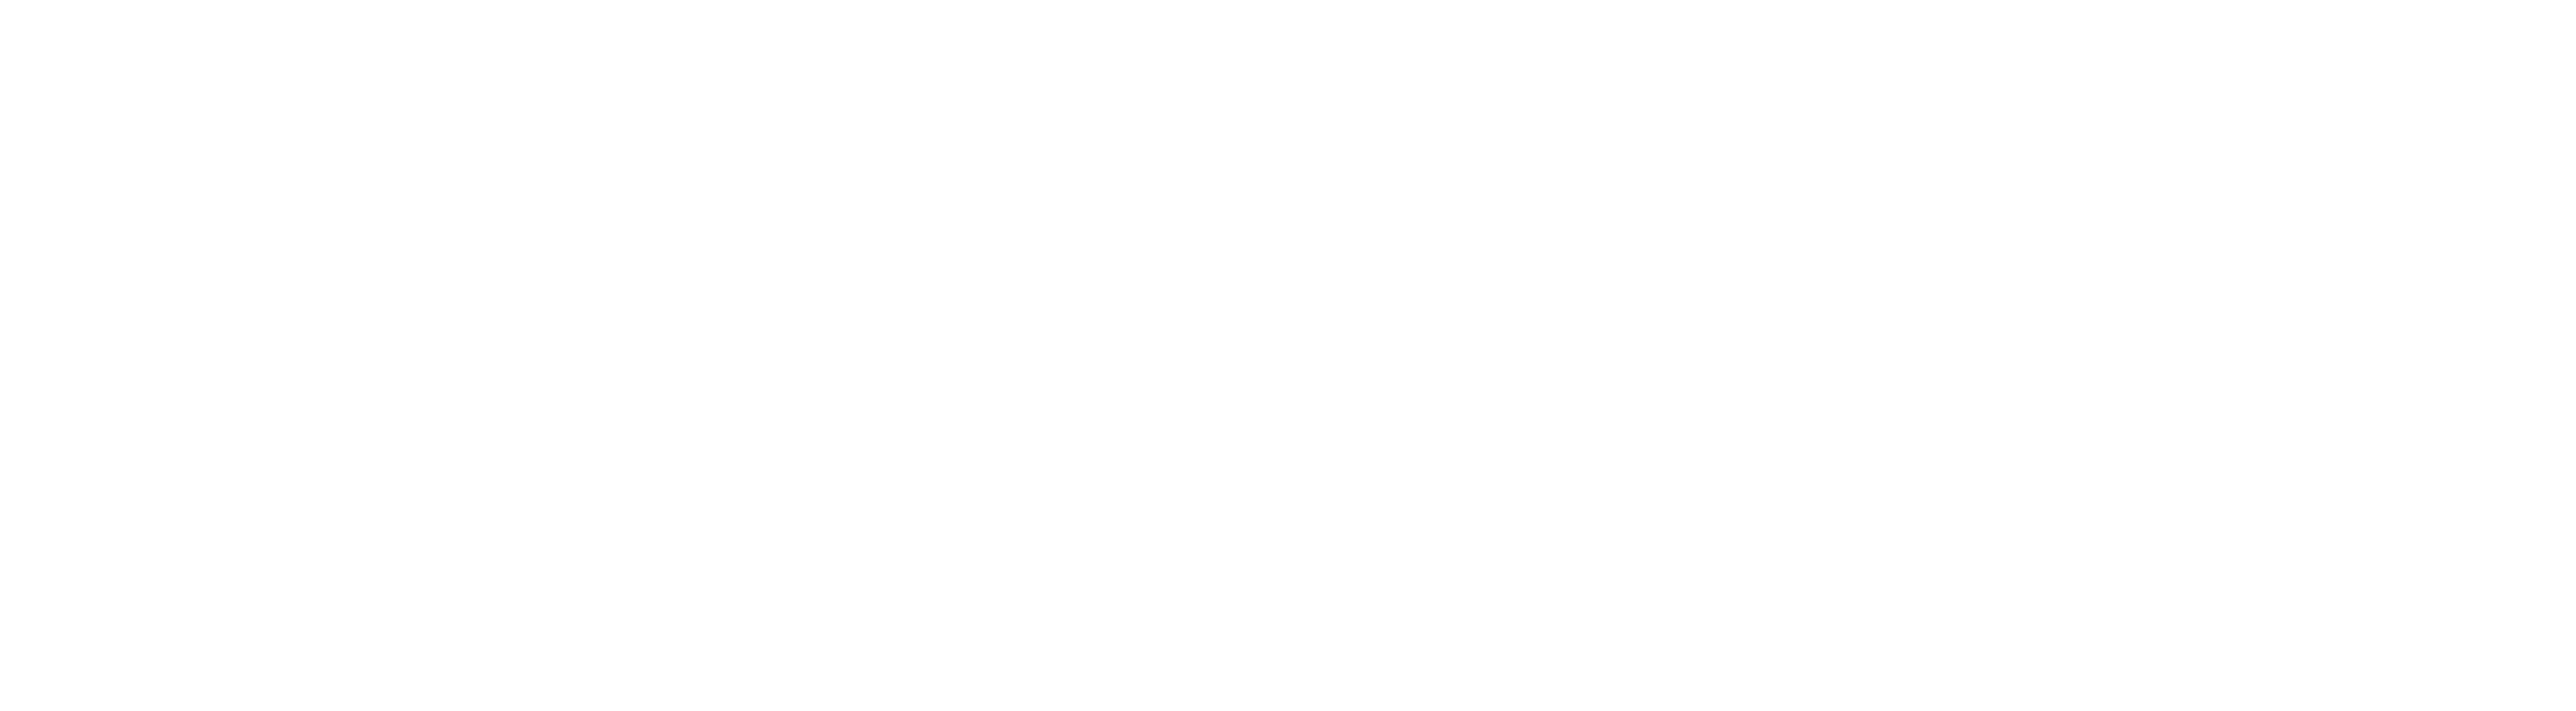 Bolipuertos S.A.